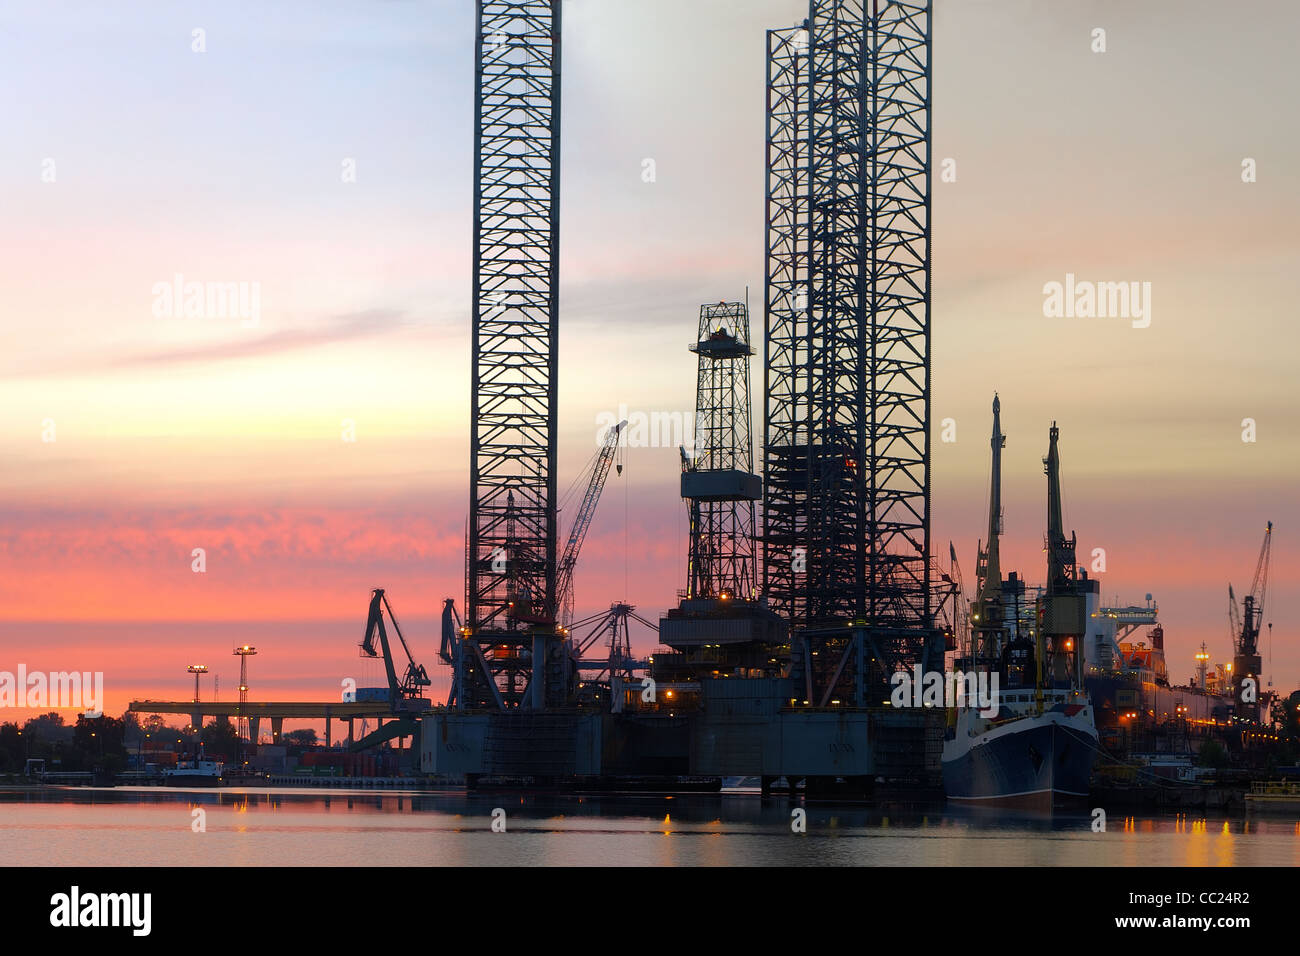 Oil Rig am Morgen auf der Werft. Stockfoto